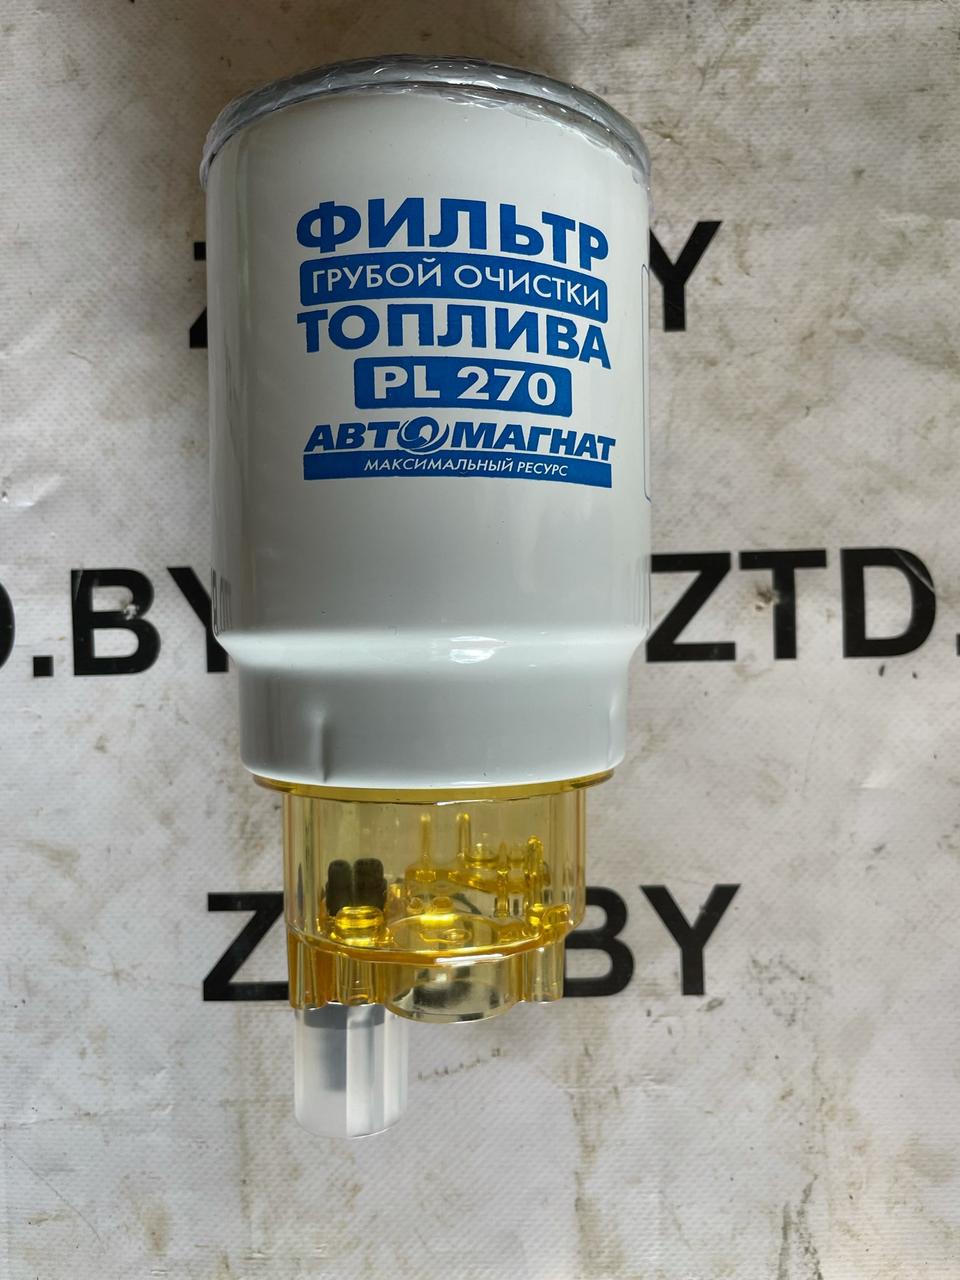 Фильтр топливный ФГОТ (Евро 2) PL 270 с отстойником